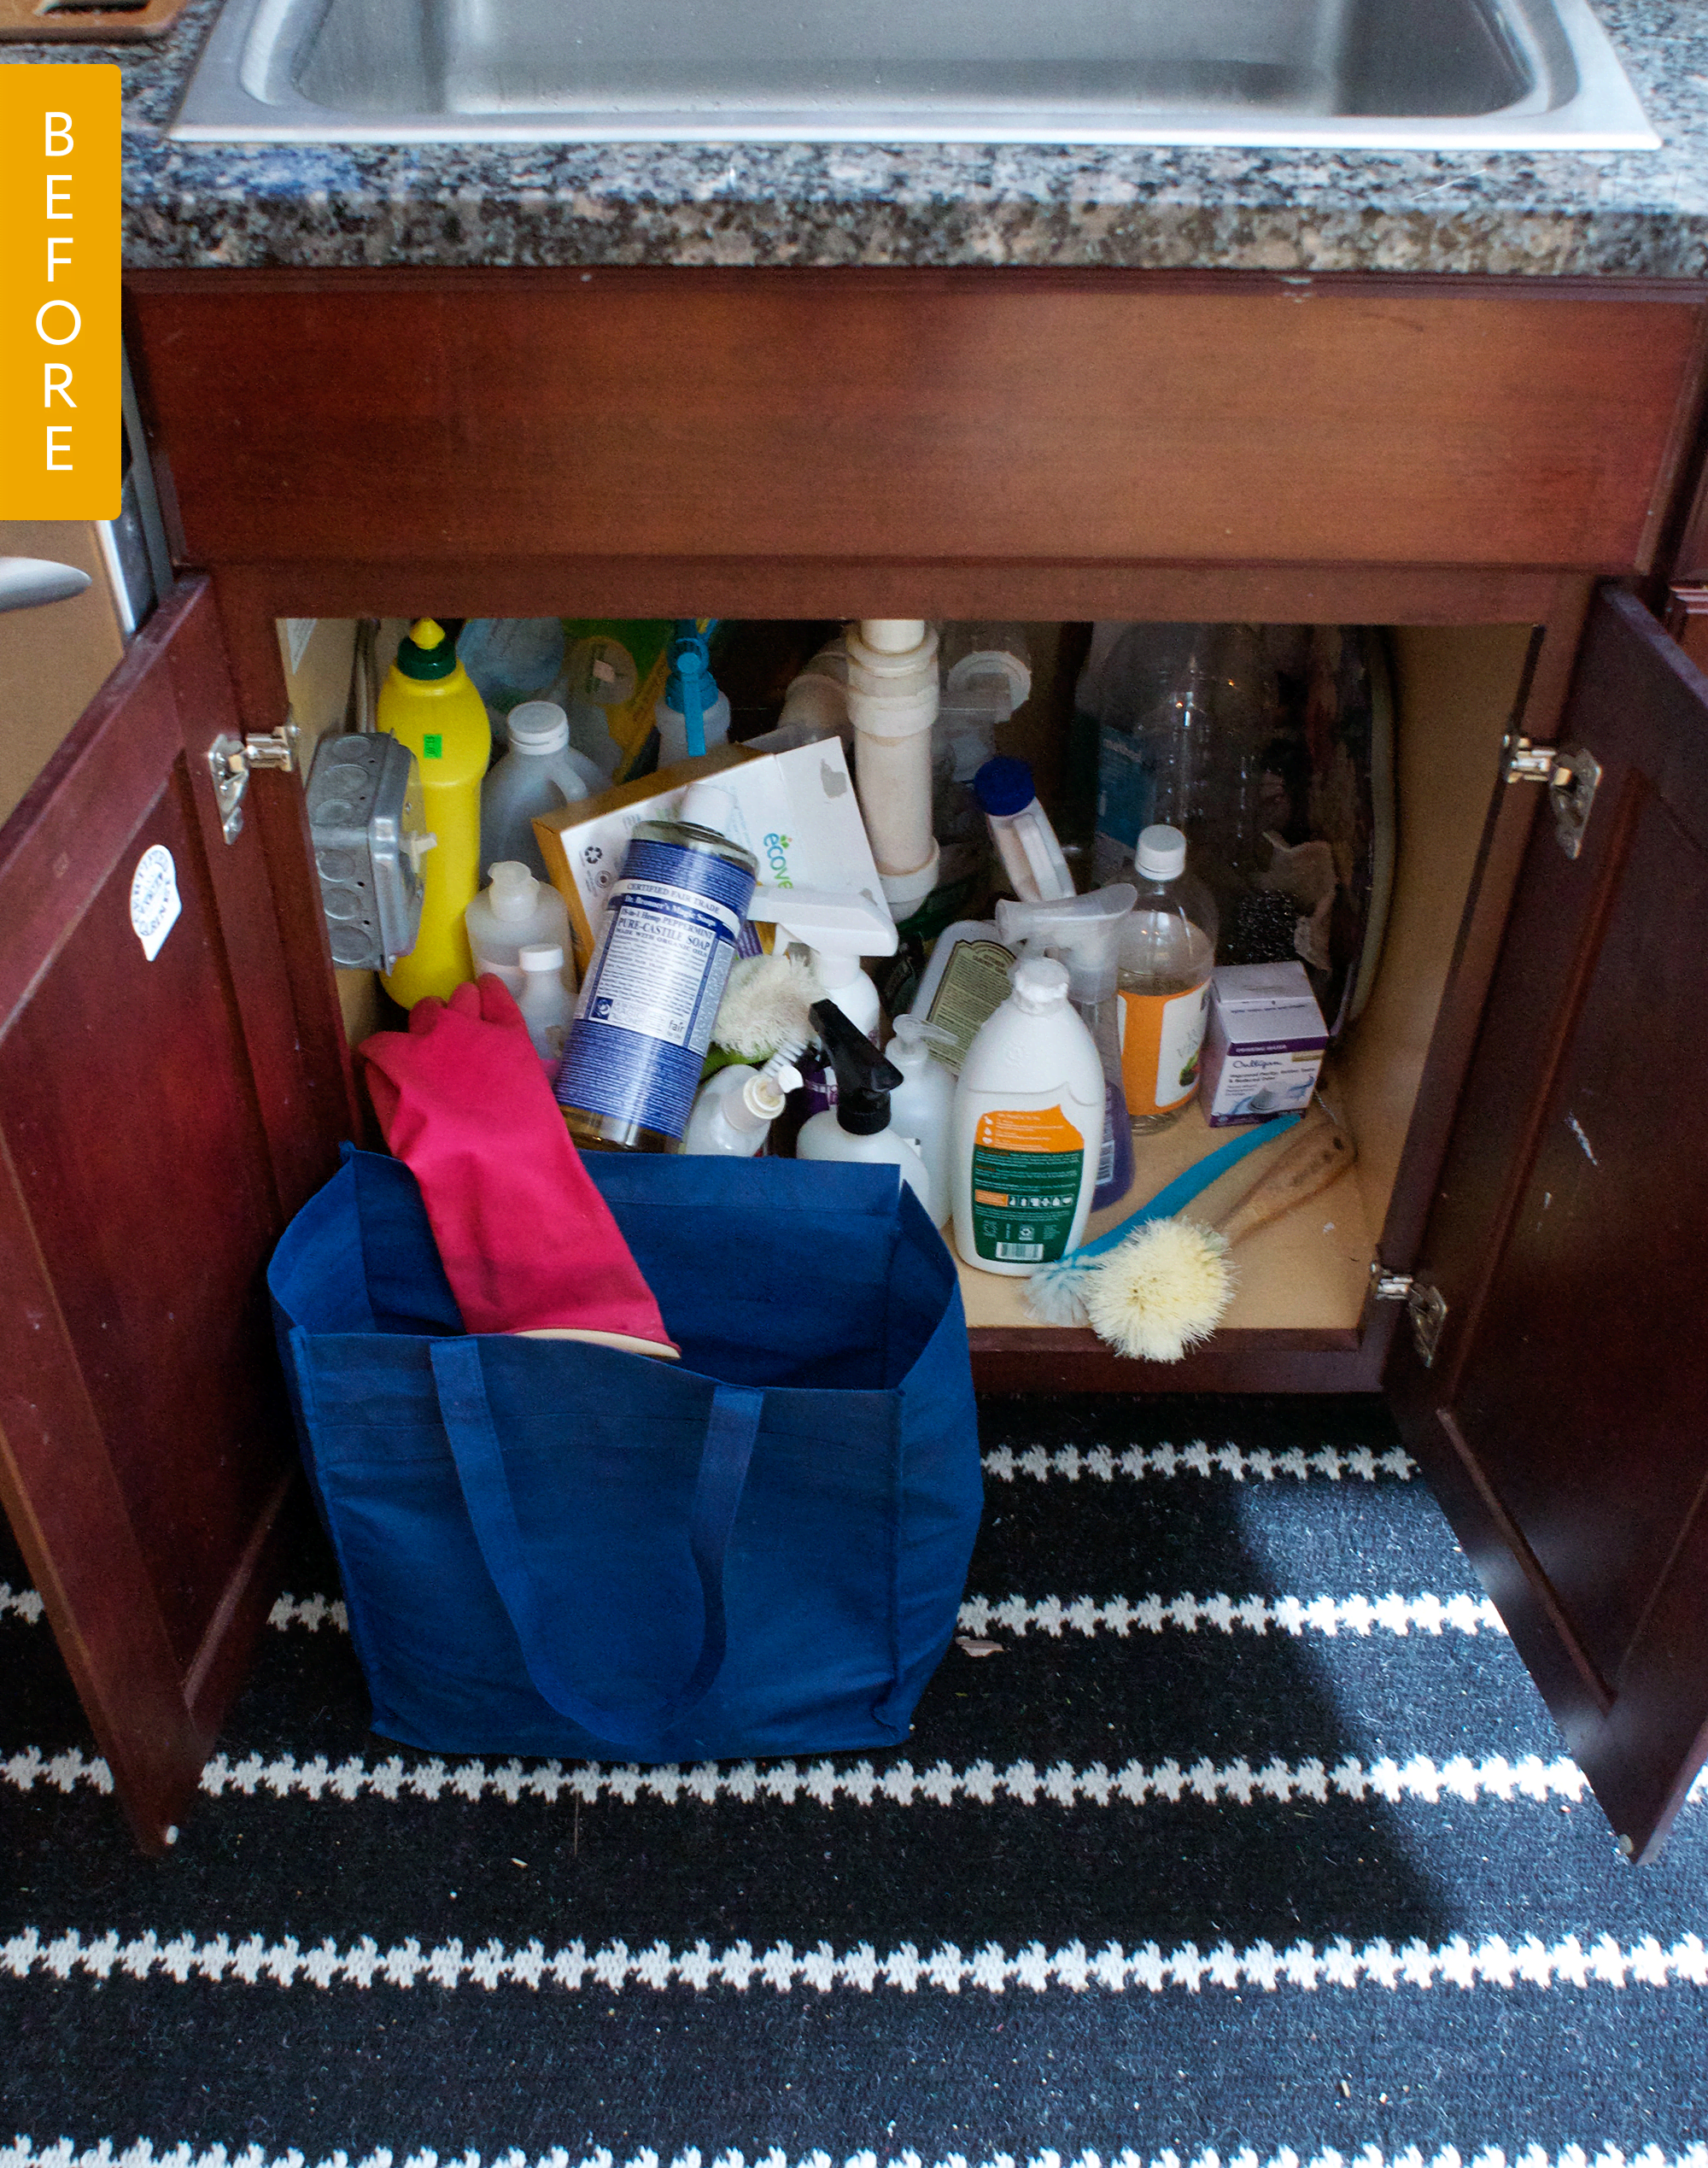 Stainless Steel Under Sink Organizer and Storage | Bathroom & Kitchen Under  Sink Organizer | Sliding Under Sink Drawer | 2-tier Countertop Organize